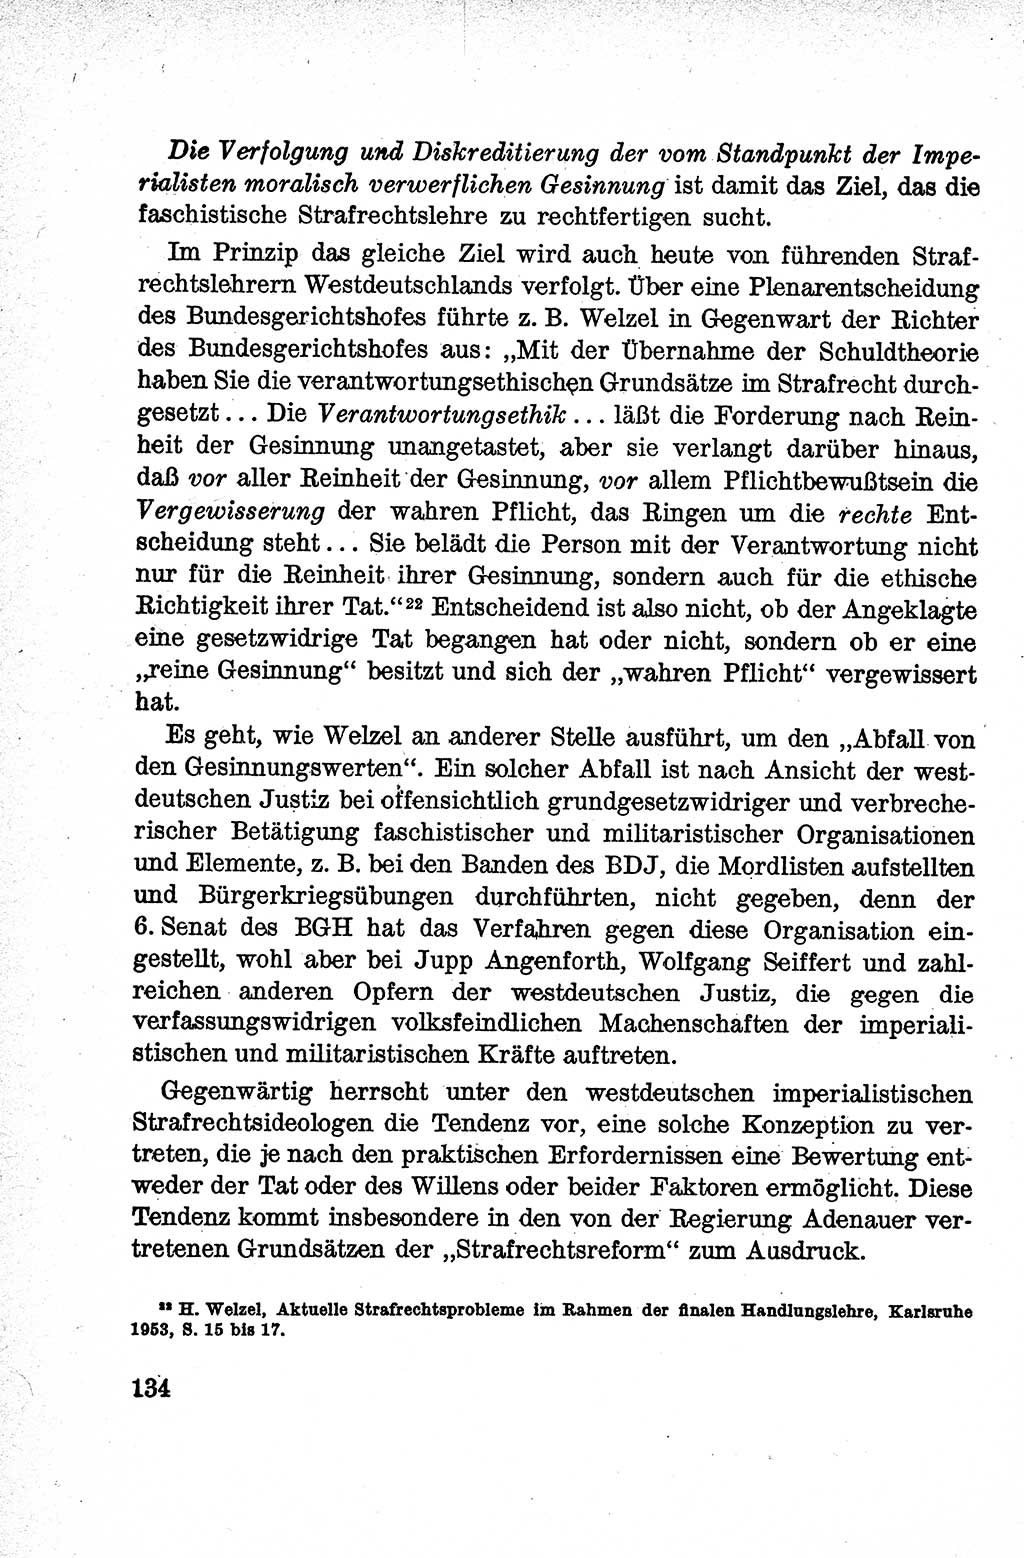 Lehrbuch des Strafrechts der Deutschen Demokratischen Republik (DDR), Allgemeiner Teil 1959, Seite 134 (Lb. Strafr. DDR AT 1959, S. 134)